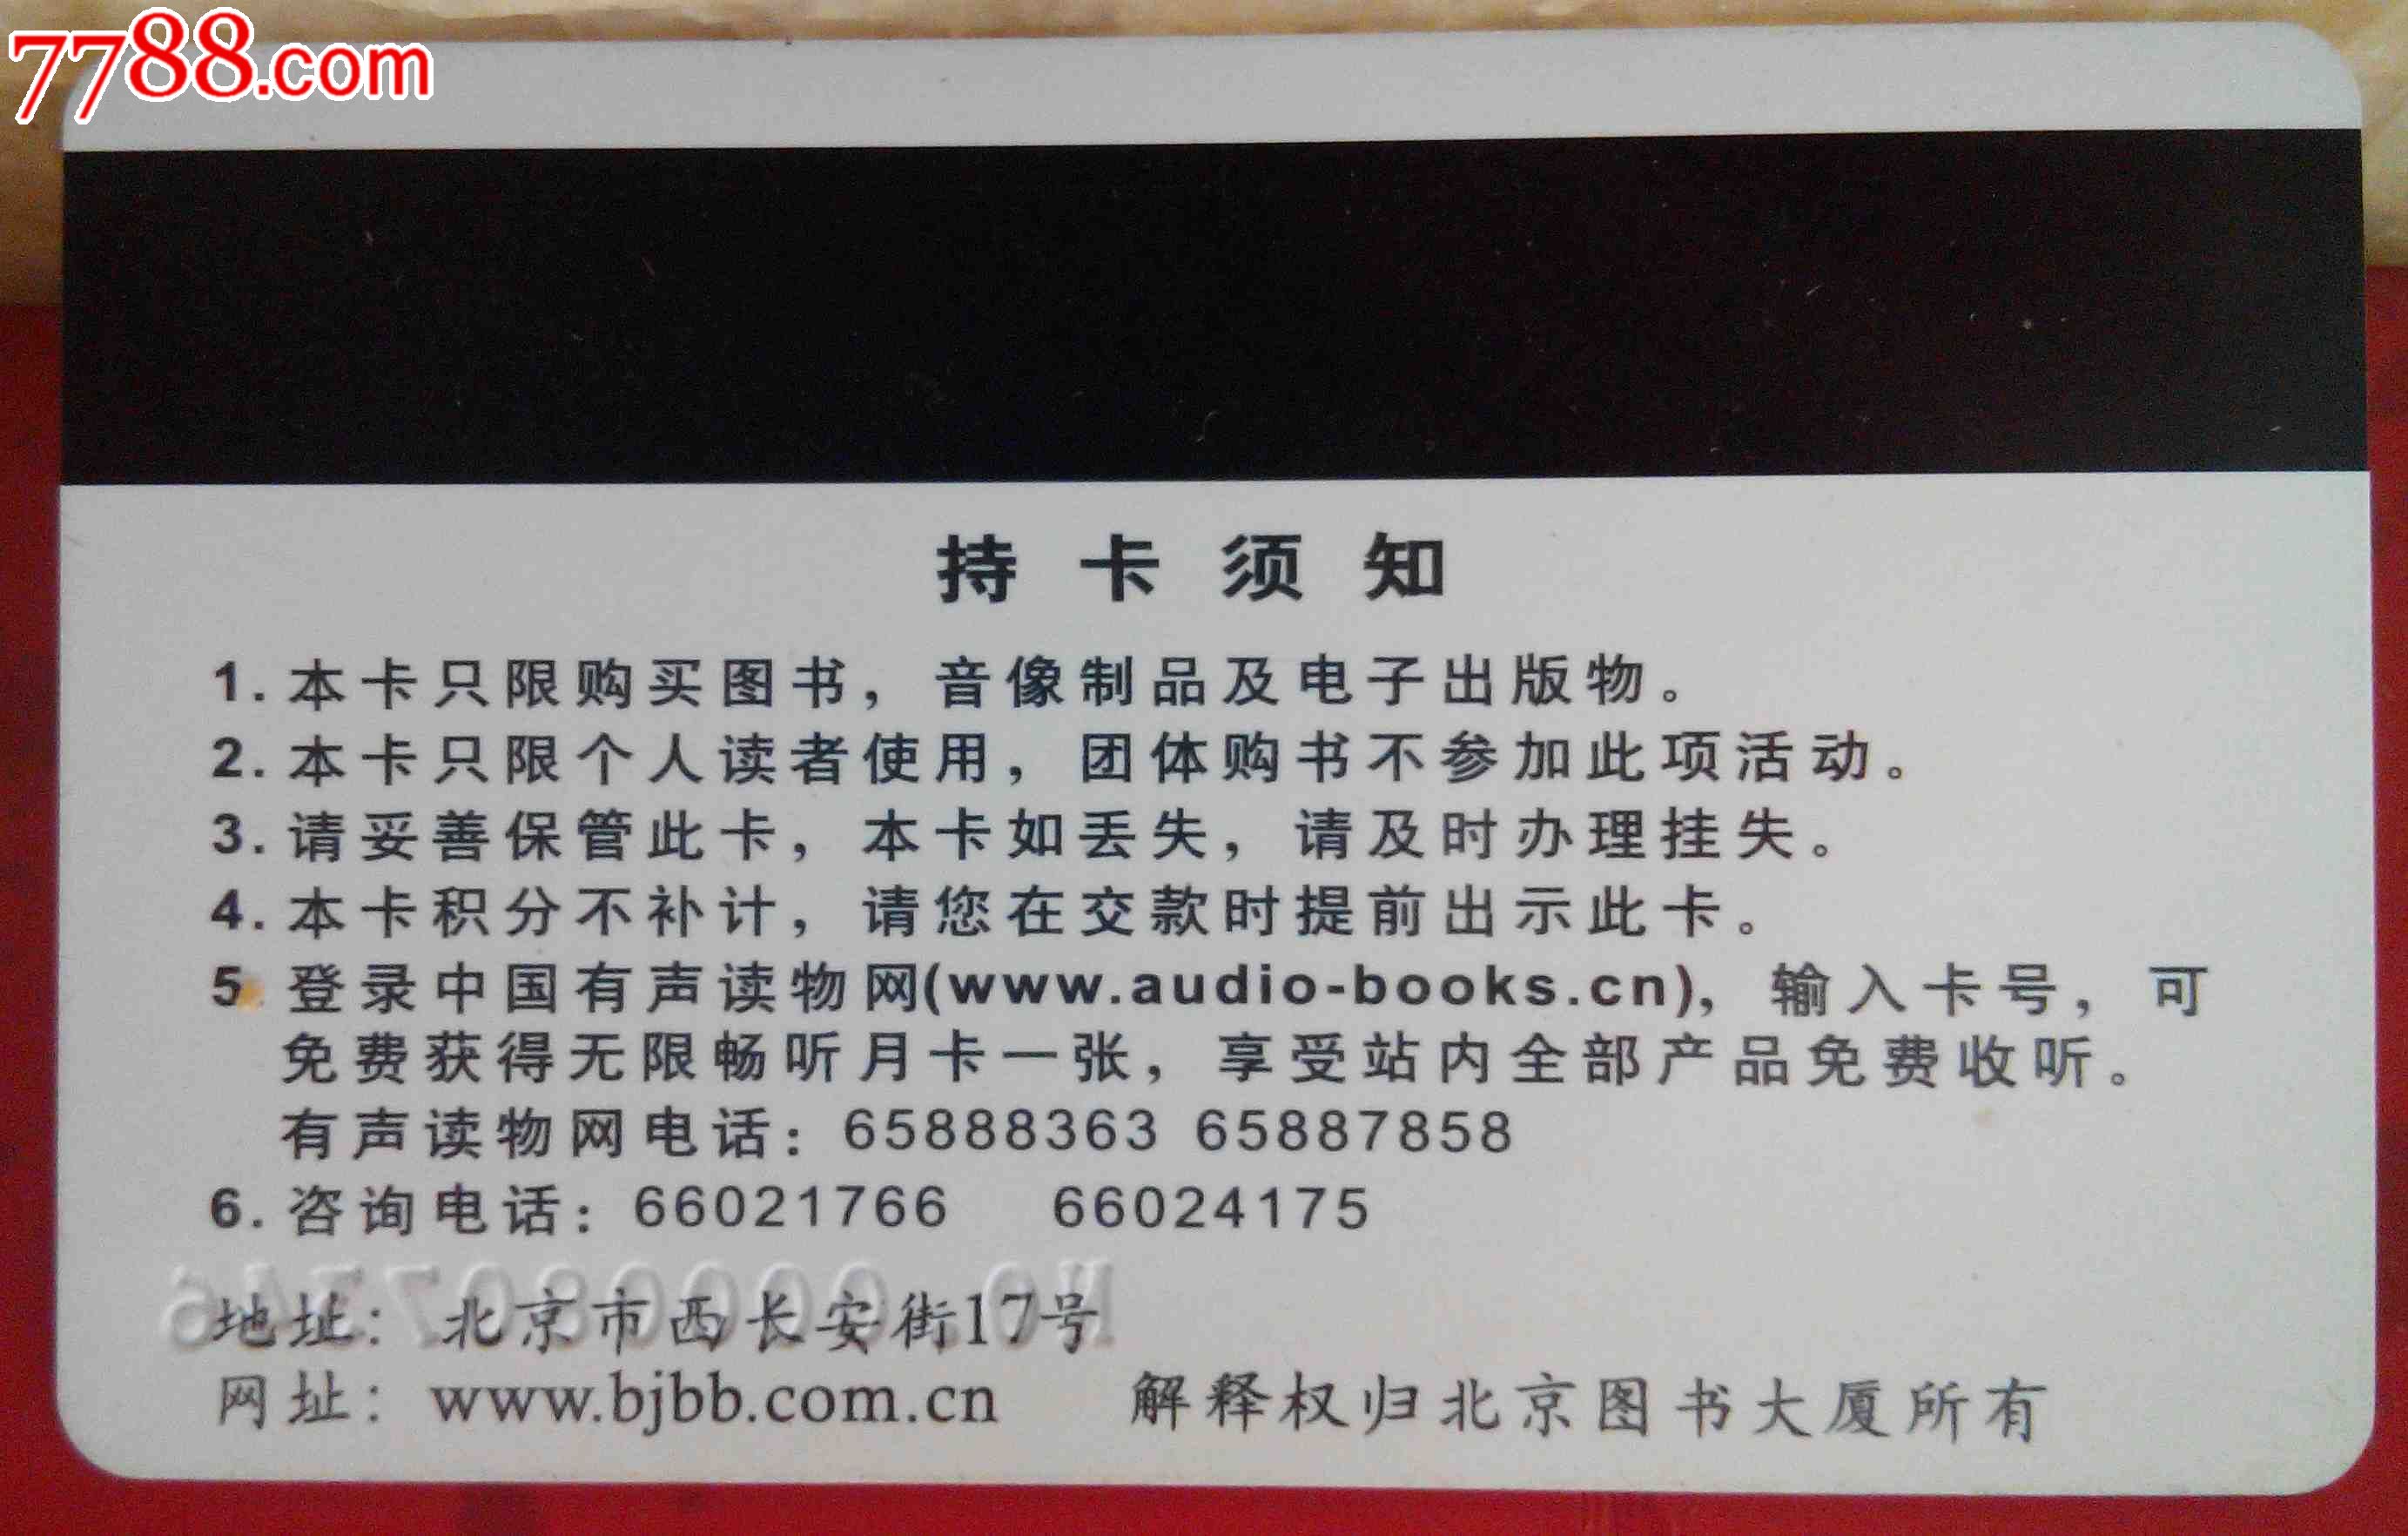 图书卡—北京图书大厦书友卡(hh:123.3)